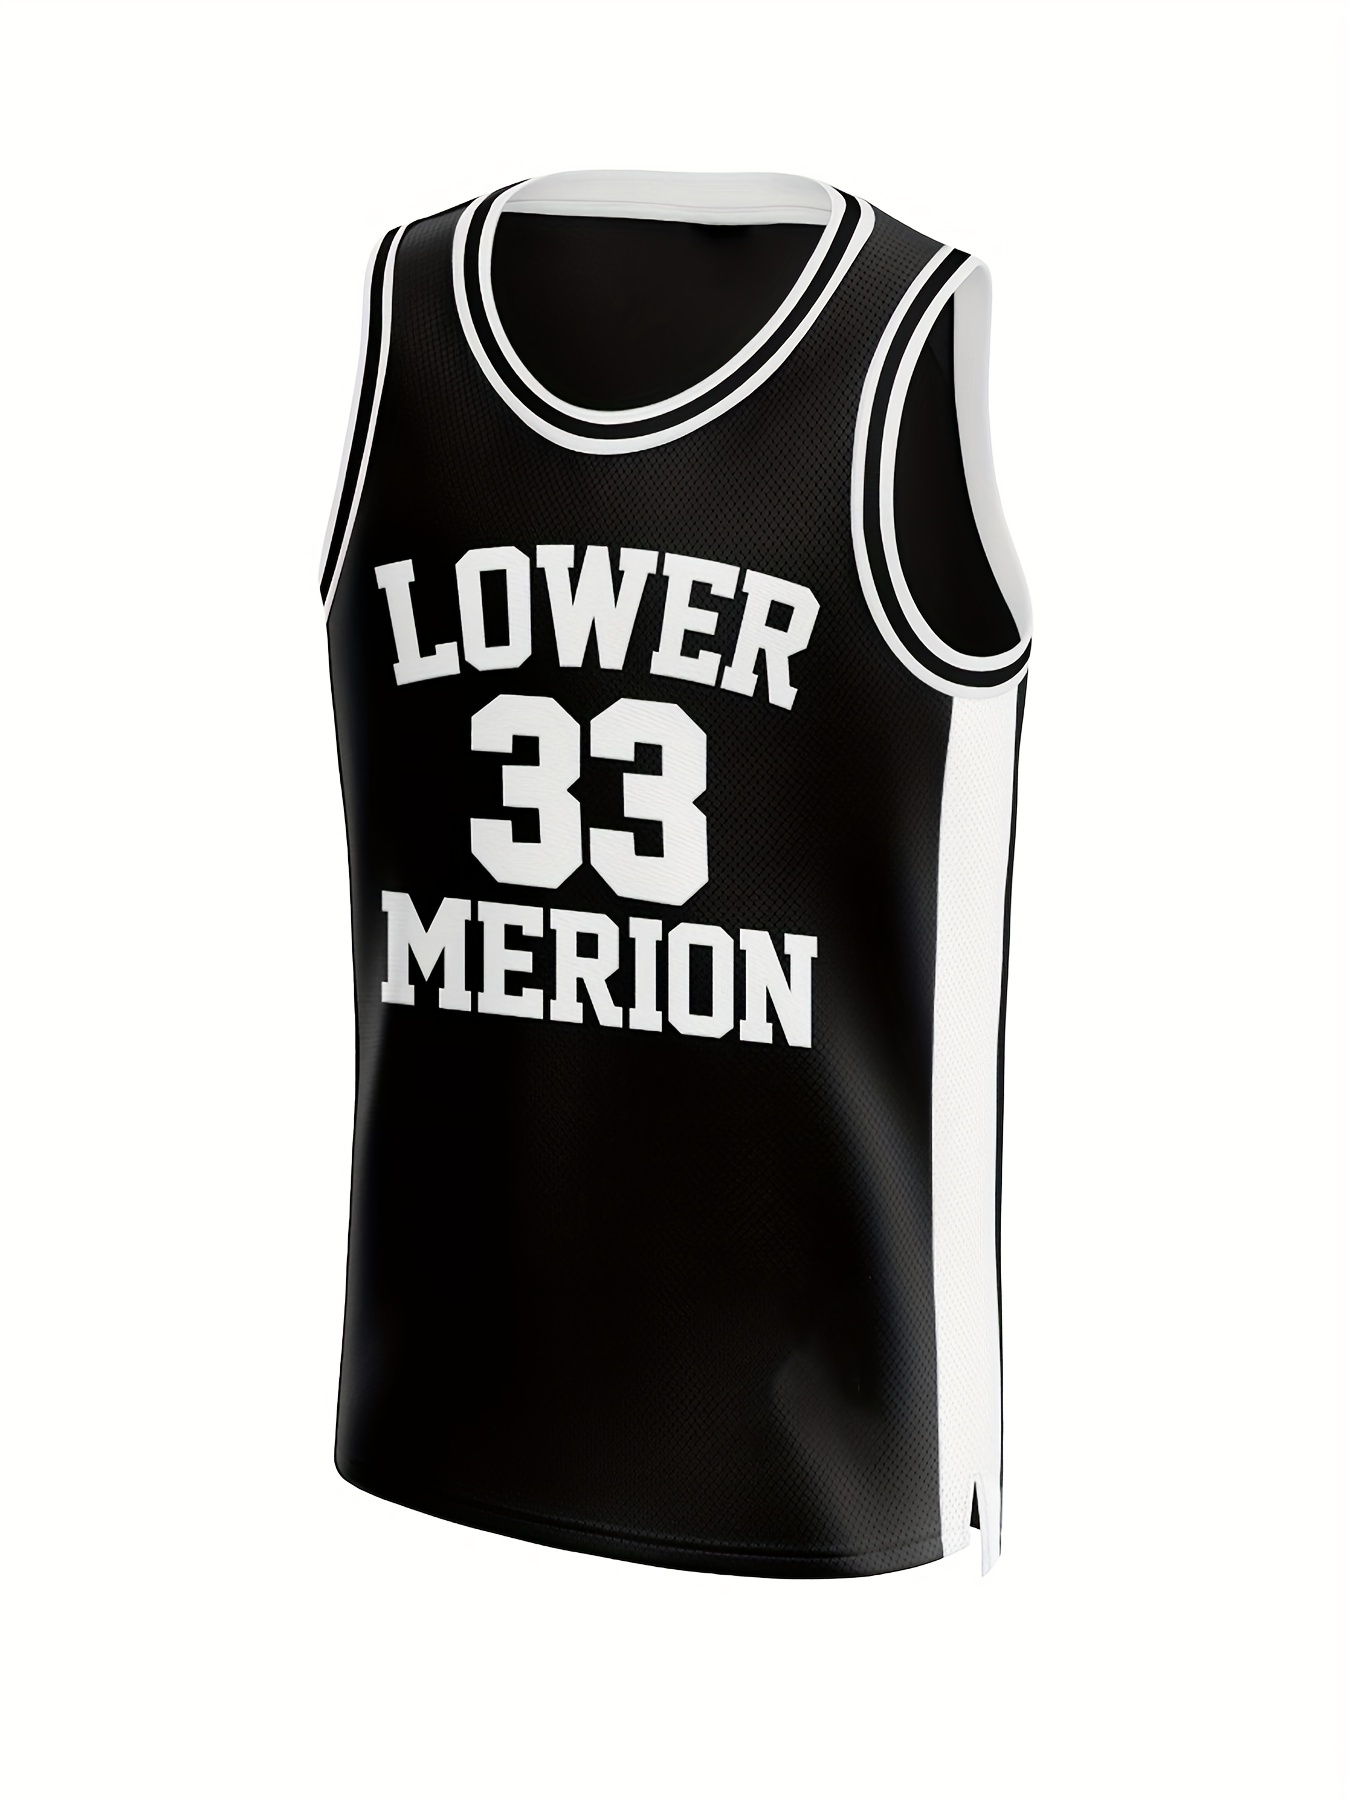 Men's Basketball Jeresy, Black 8 Mamba Jersey Shirts, Fashion Basketball  Jersey, Gift for Basketball Fans, Black, L 